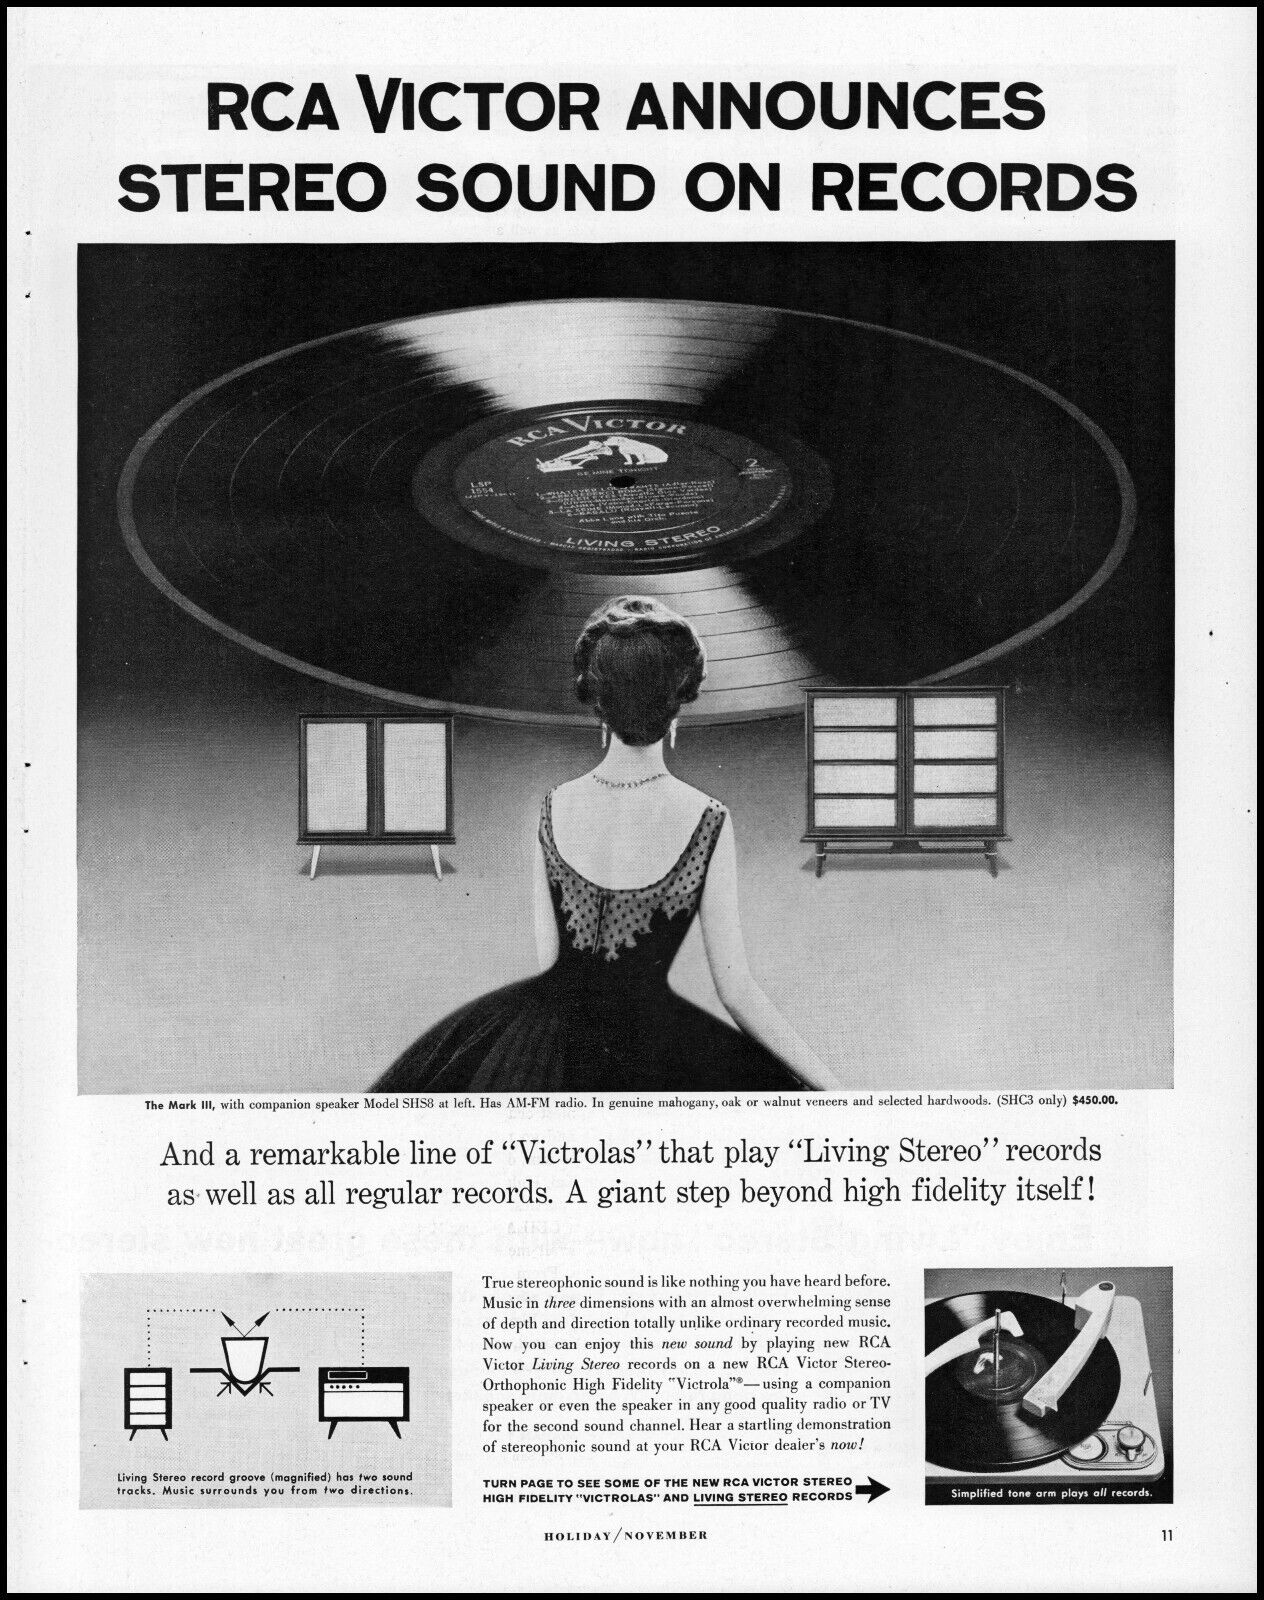 1958 RCA Victor announces stereo sound on records debut retro photo print ad L13